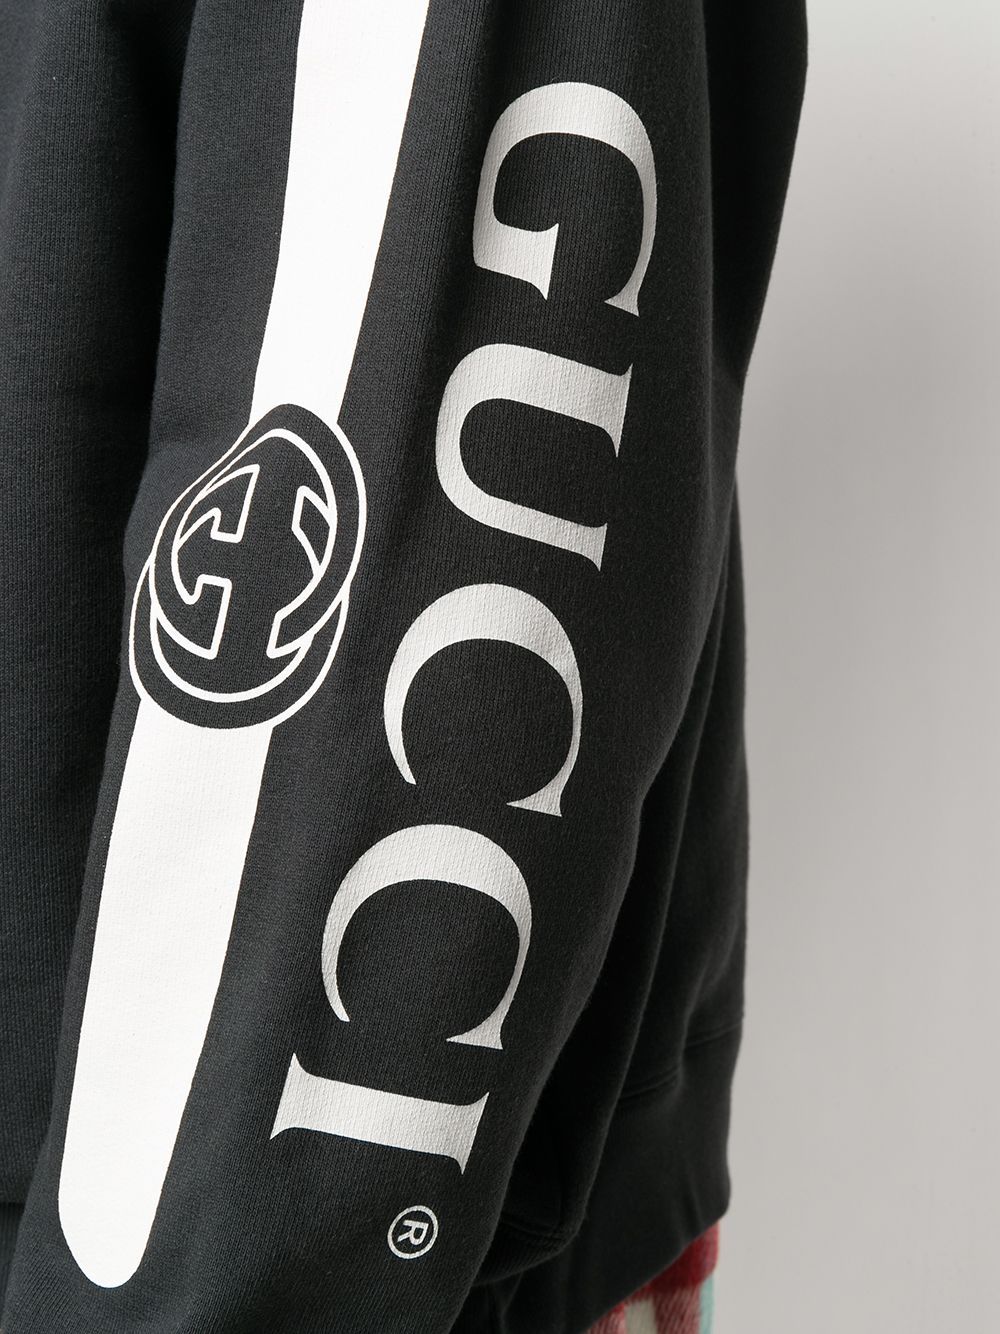 фото Gucci худи с логотипом